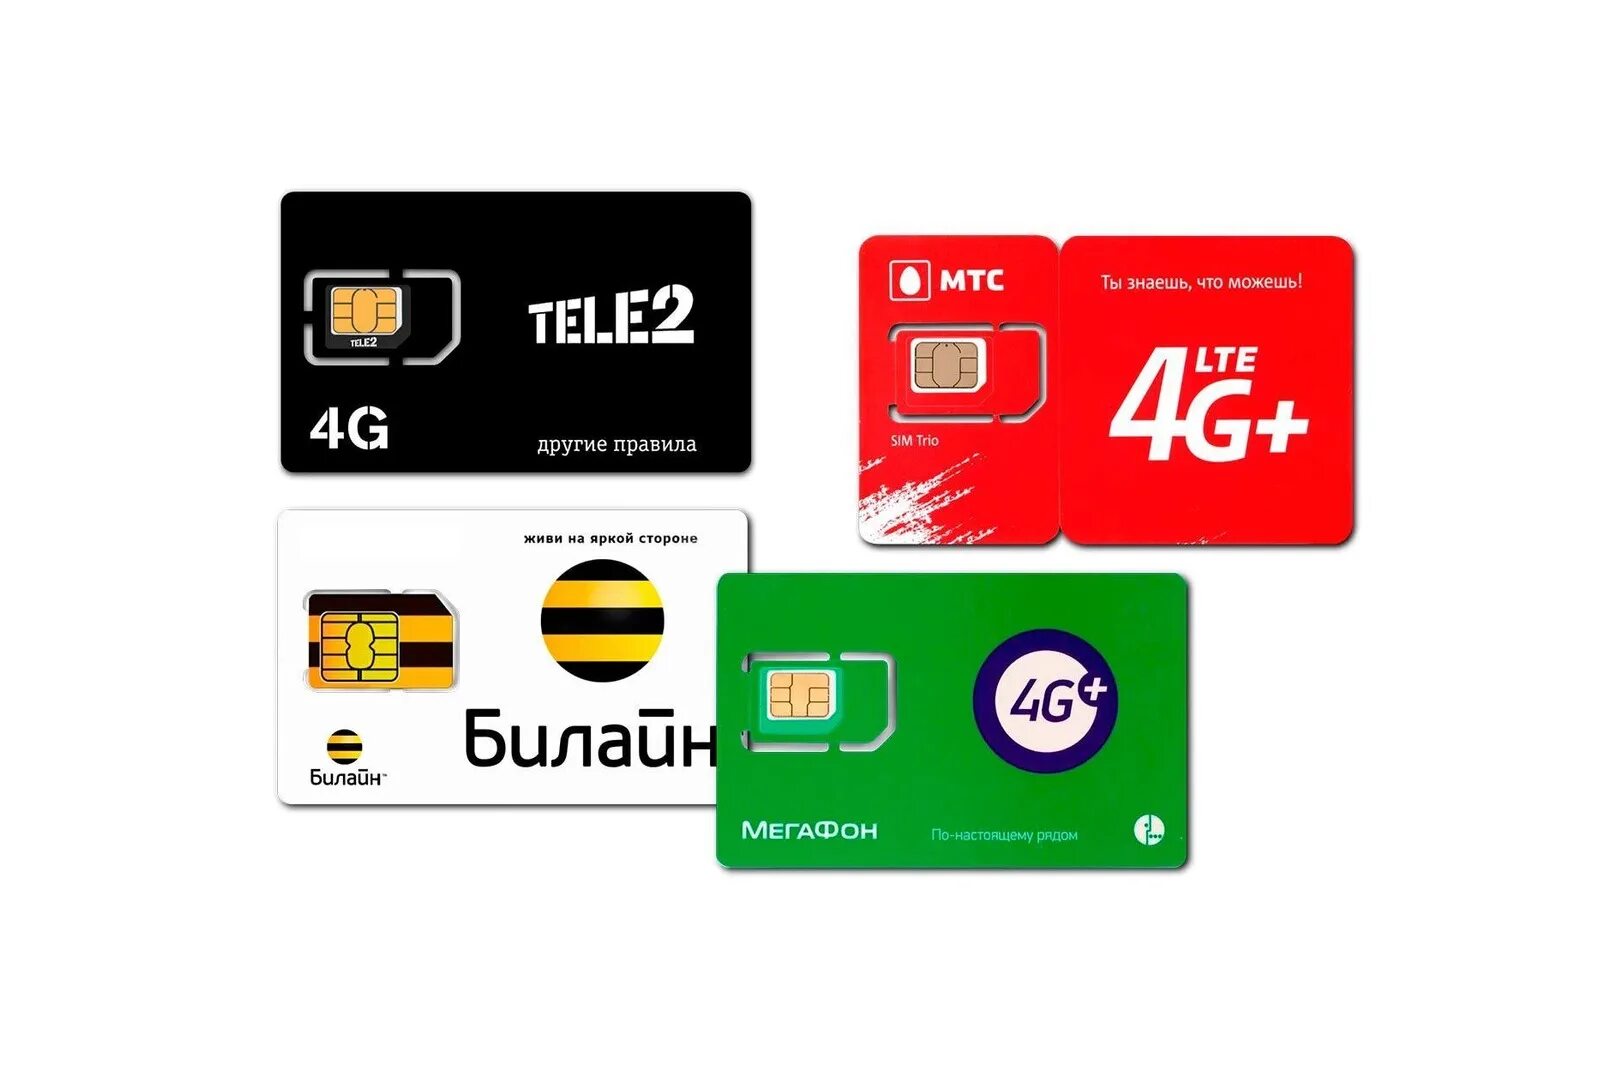 Оплата через сим карту. SIM-карта теле2, МТС, Билайн, МЕГАФОН. Готовый комплект для усиления мобильного 3g 4g LTE. Симка безлимит. Сим карта для интернета.